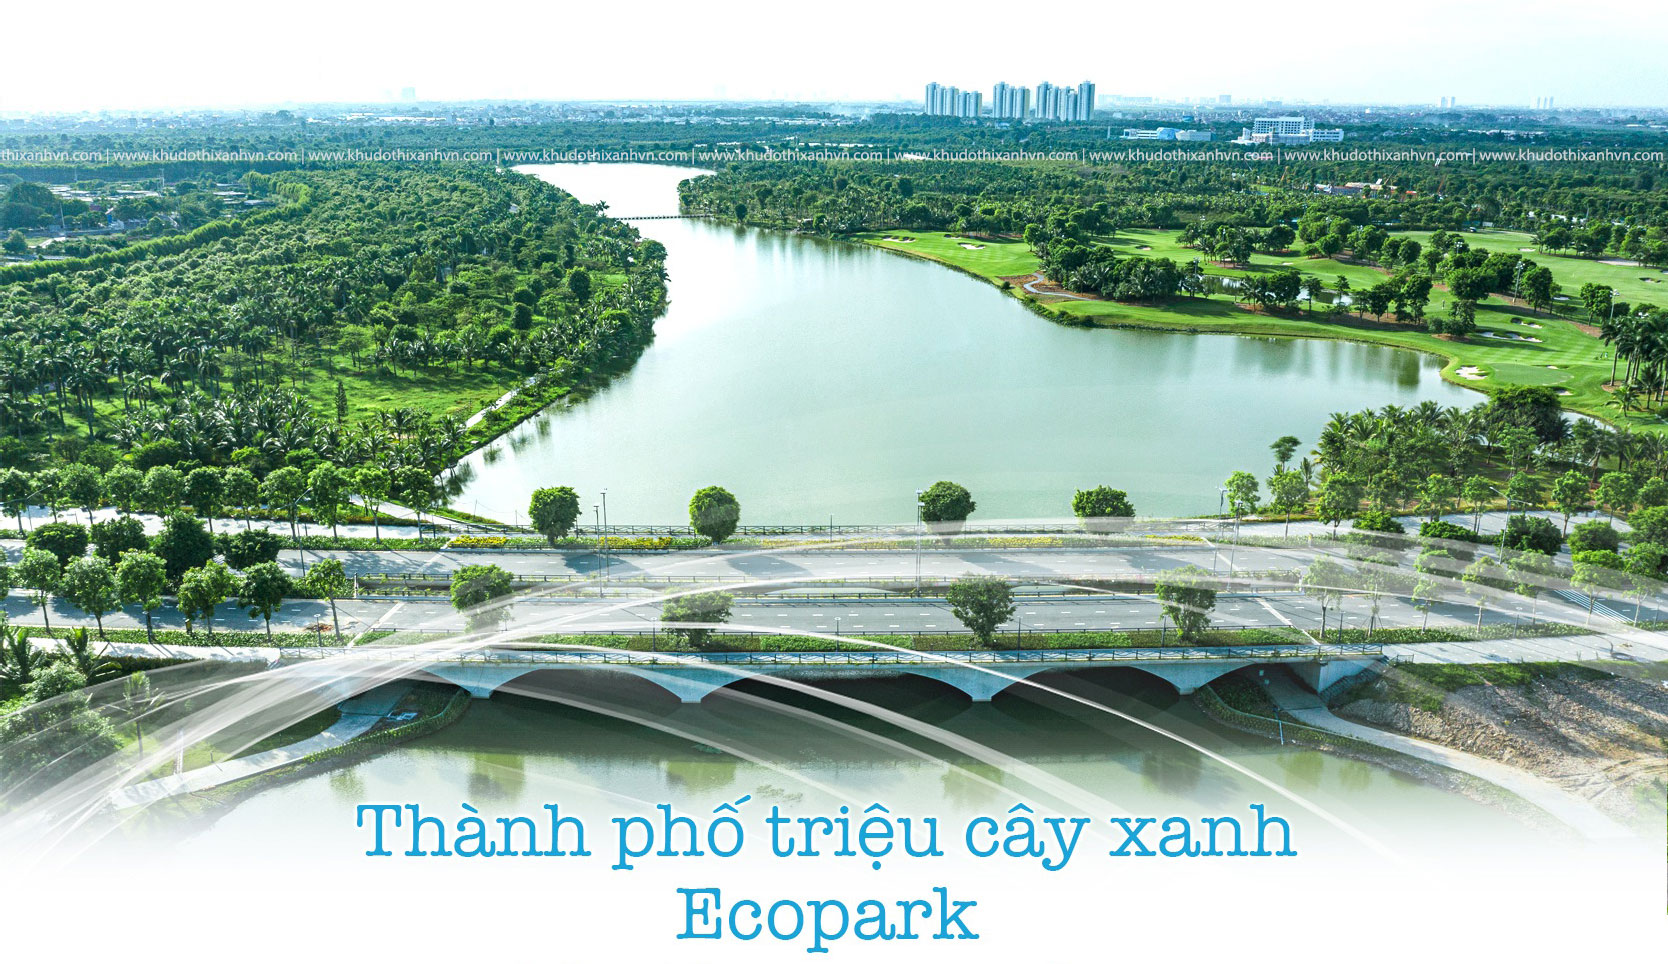 Thành phố triệu cây xanh Ecopark